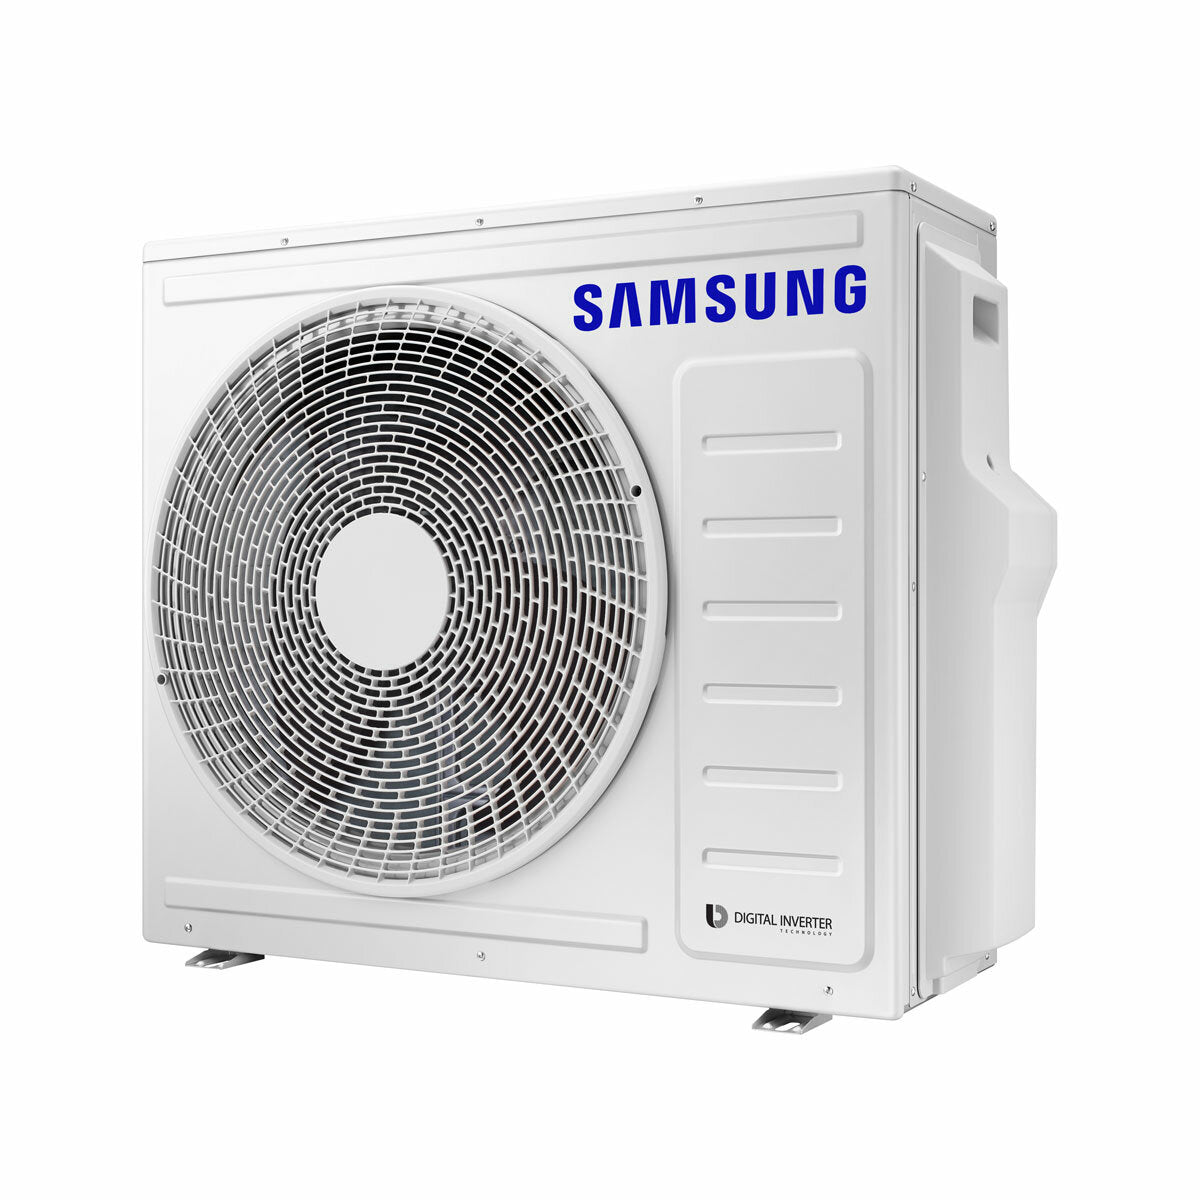 Samsung windfree Klimaanlage Avant Trial Split 7000 + 12000 + 12000 BTU Inverter A++ WLAN Außengerät 6,8 kW